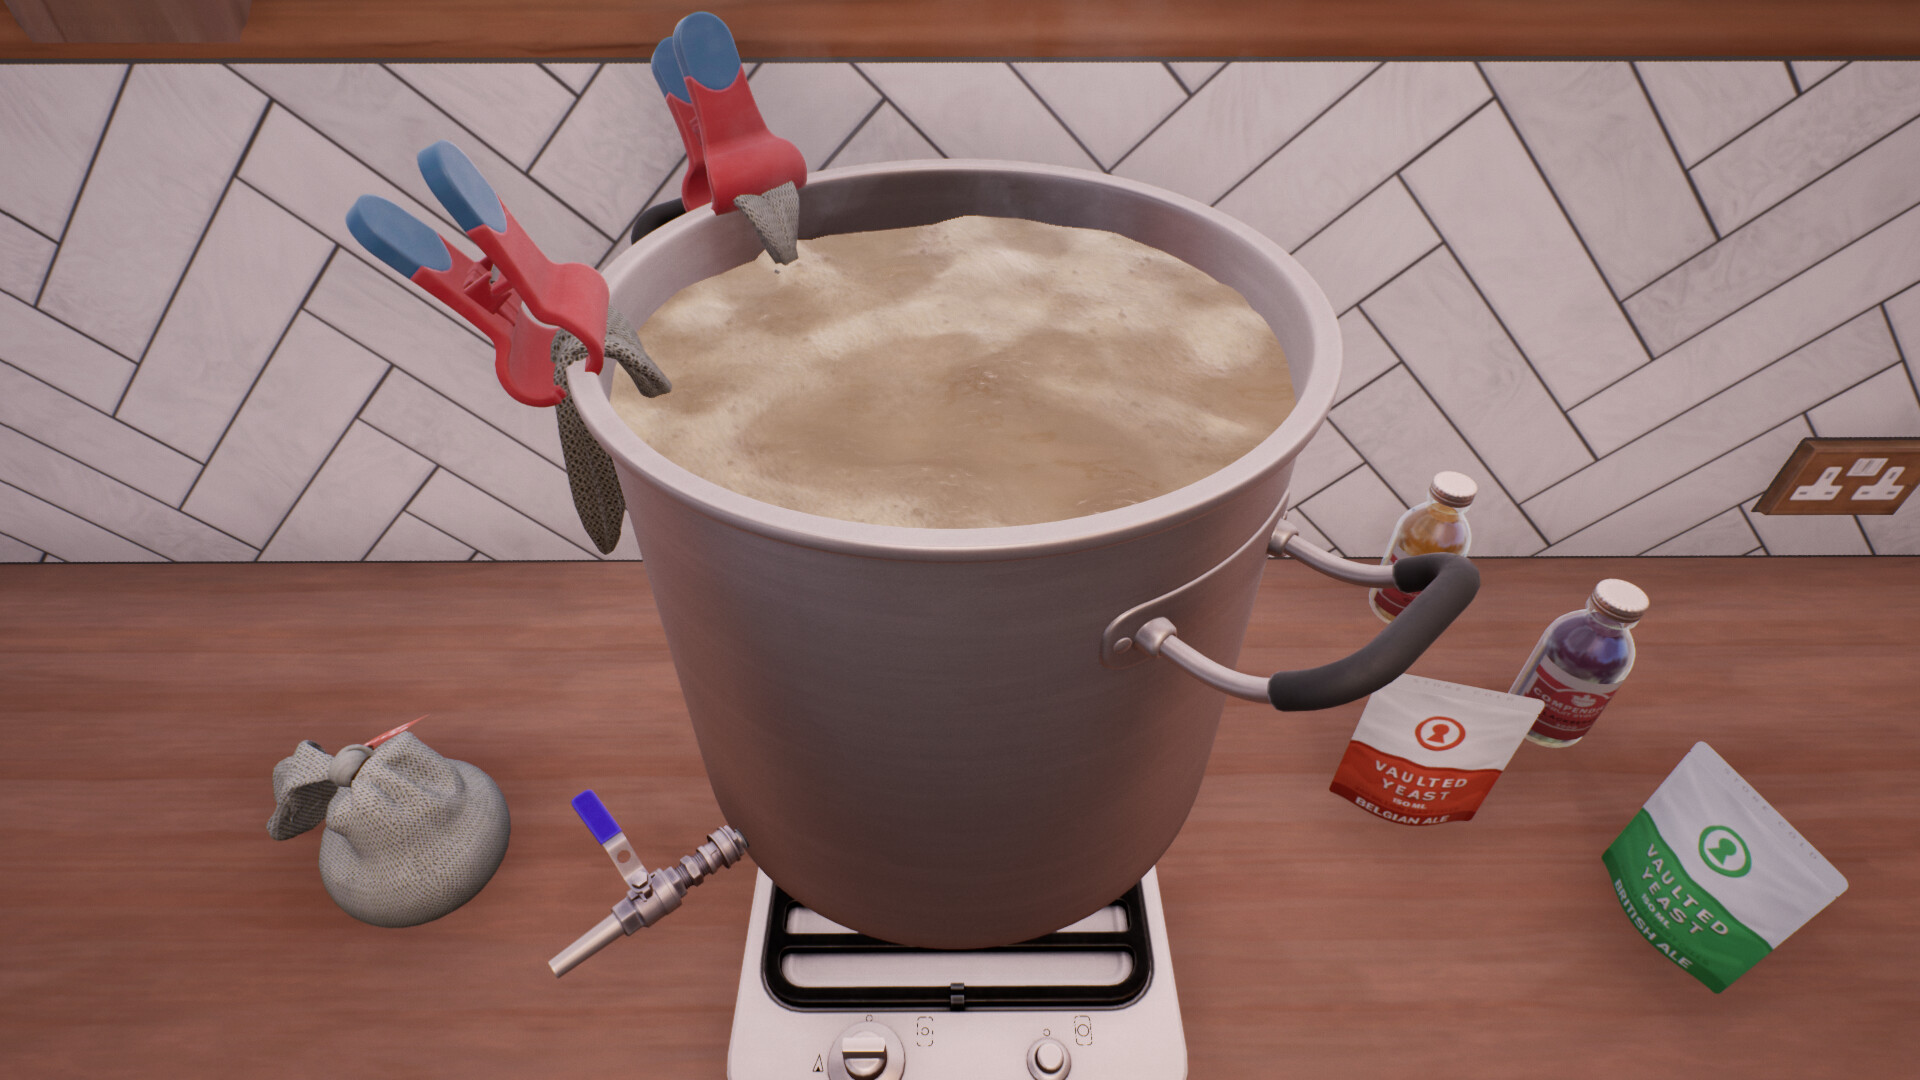 Brewmaster: Beer Brewing Simulator Steam CD Key